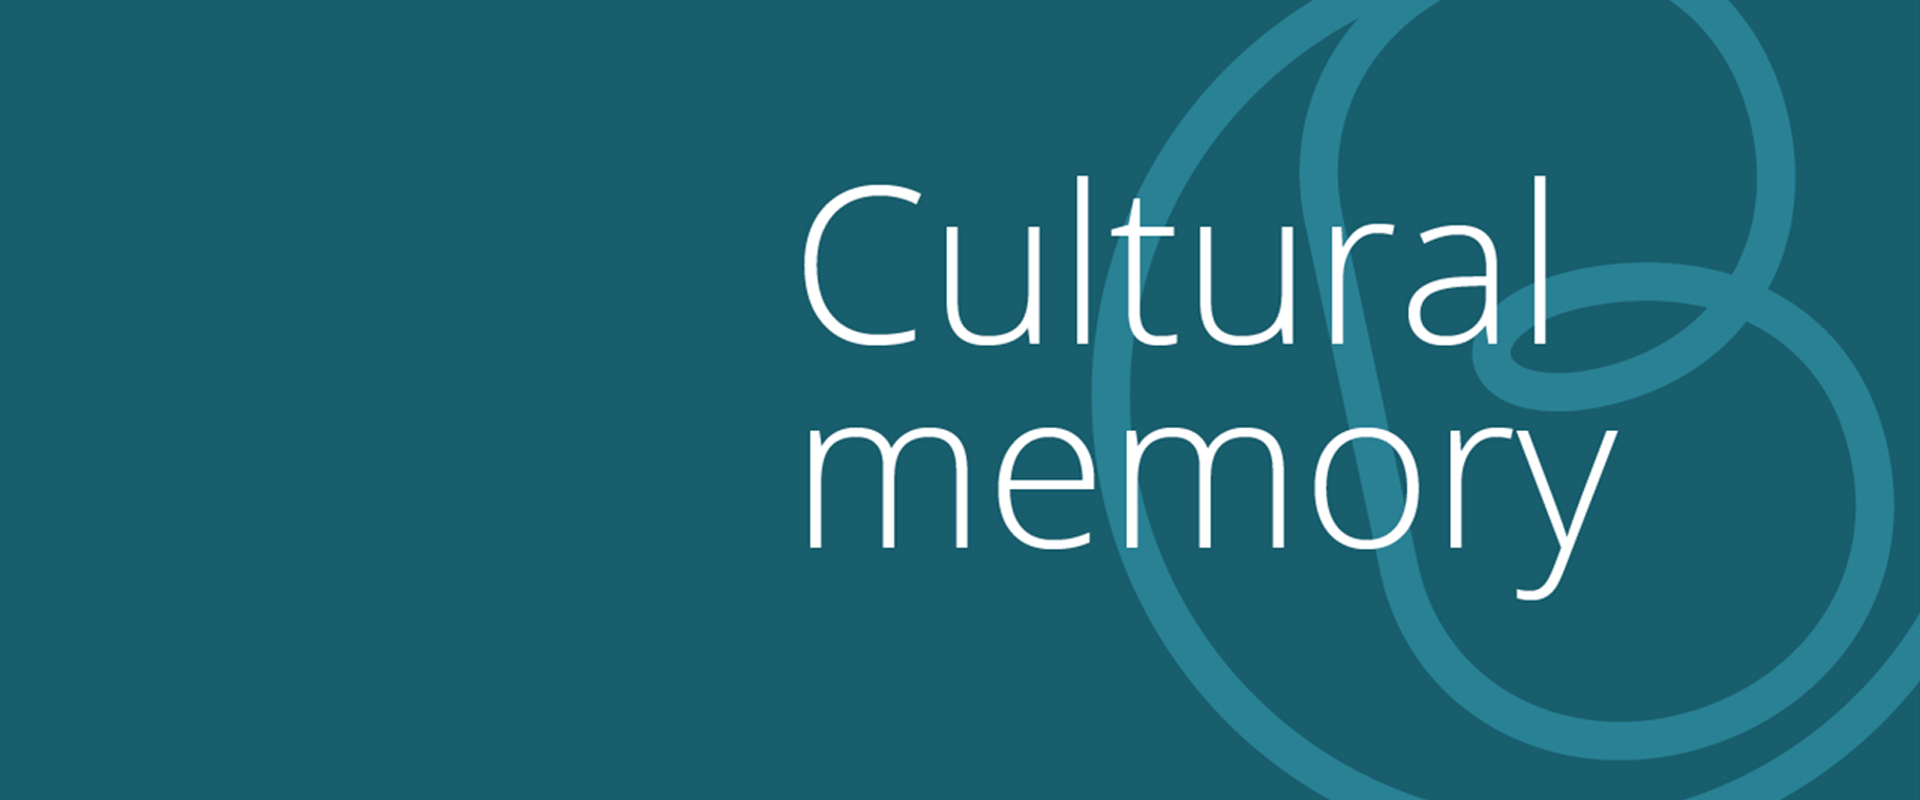 Cultural memory